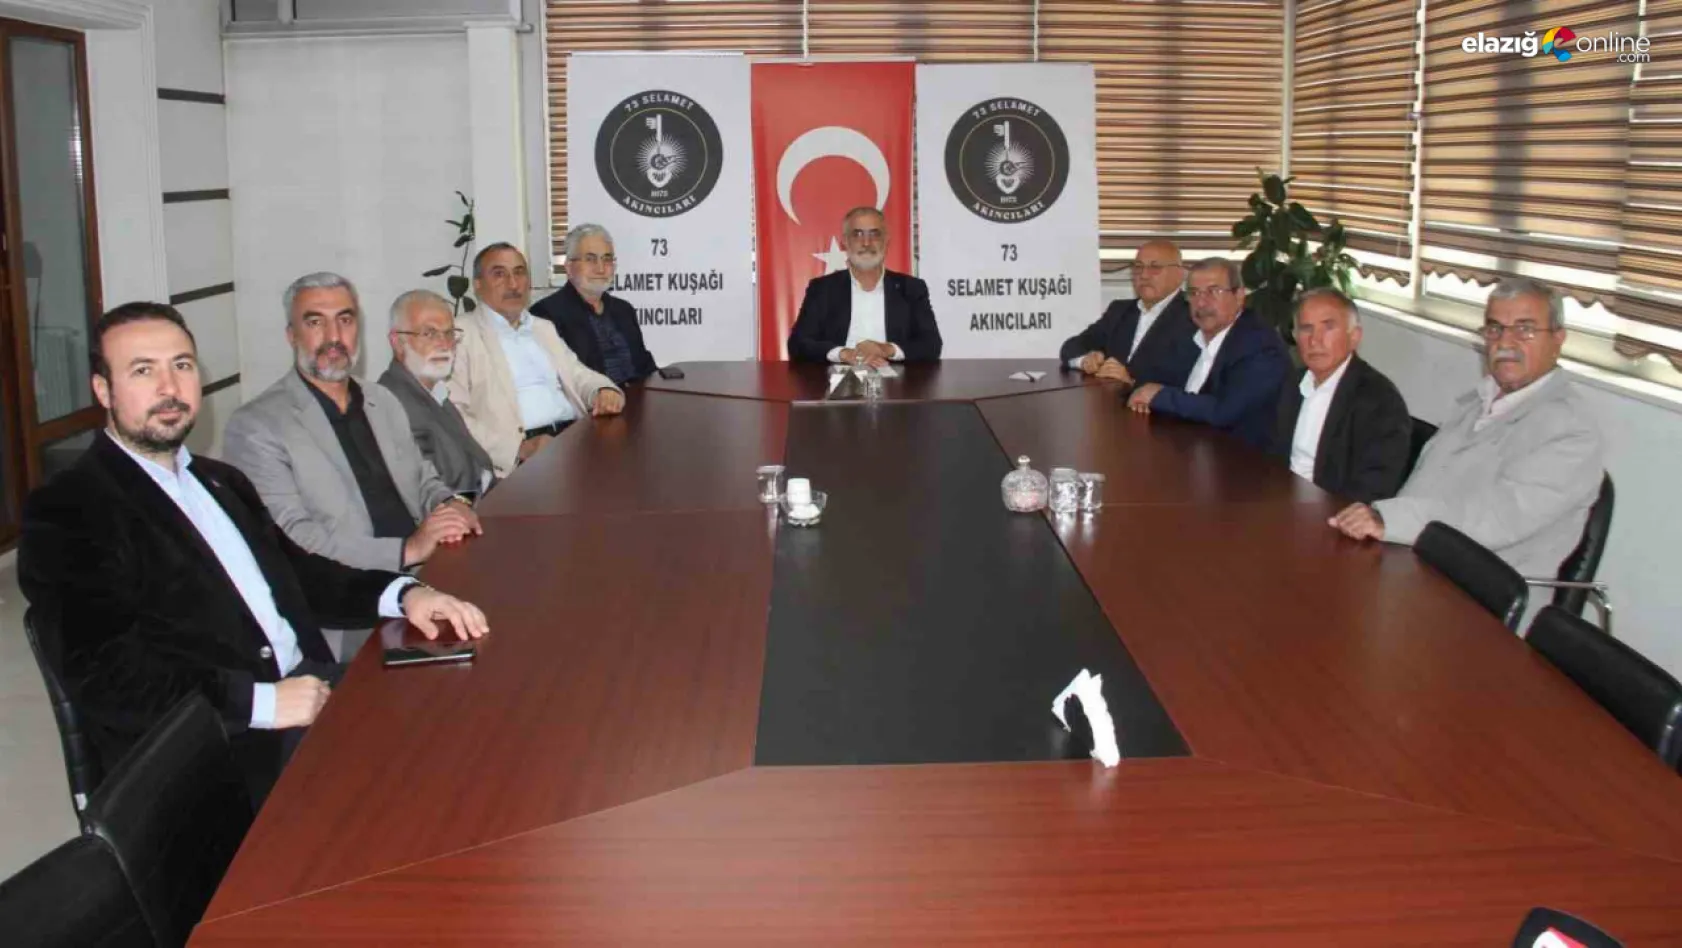 73 Selamet Kuşağı Akıncıları'ndan Erdoğan'a tam destek